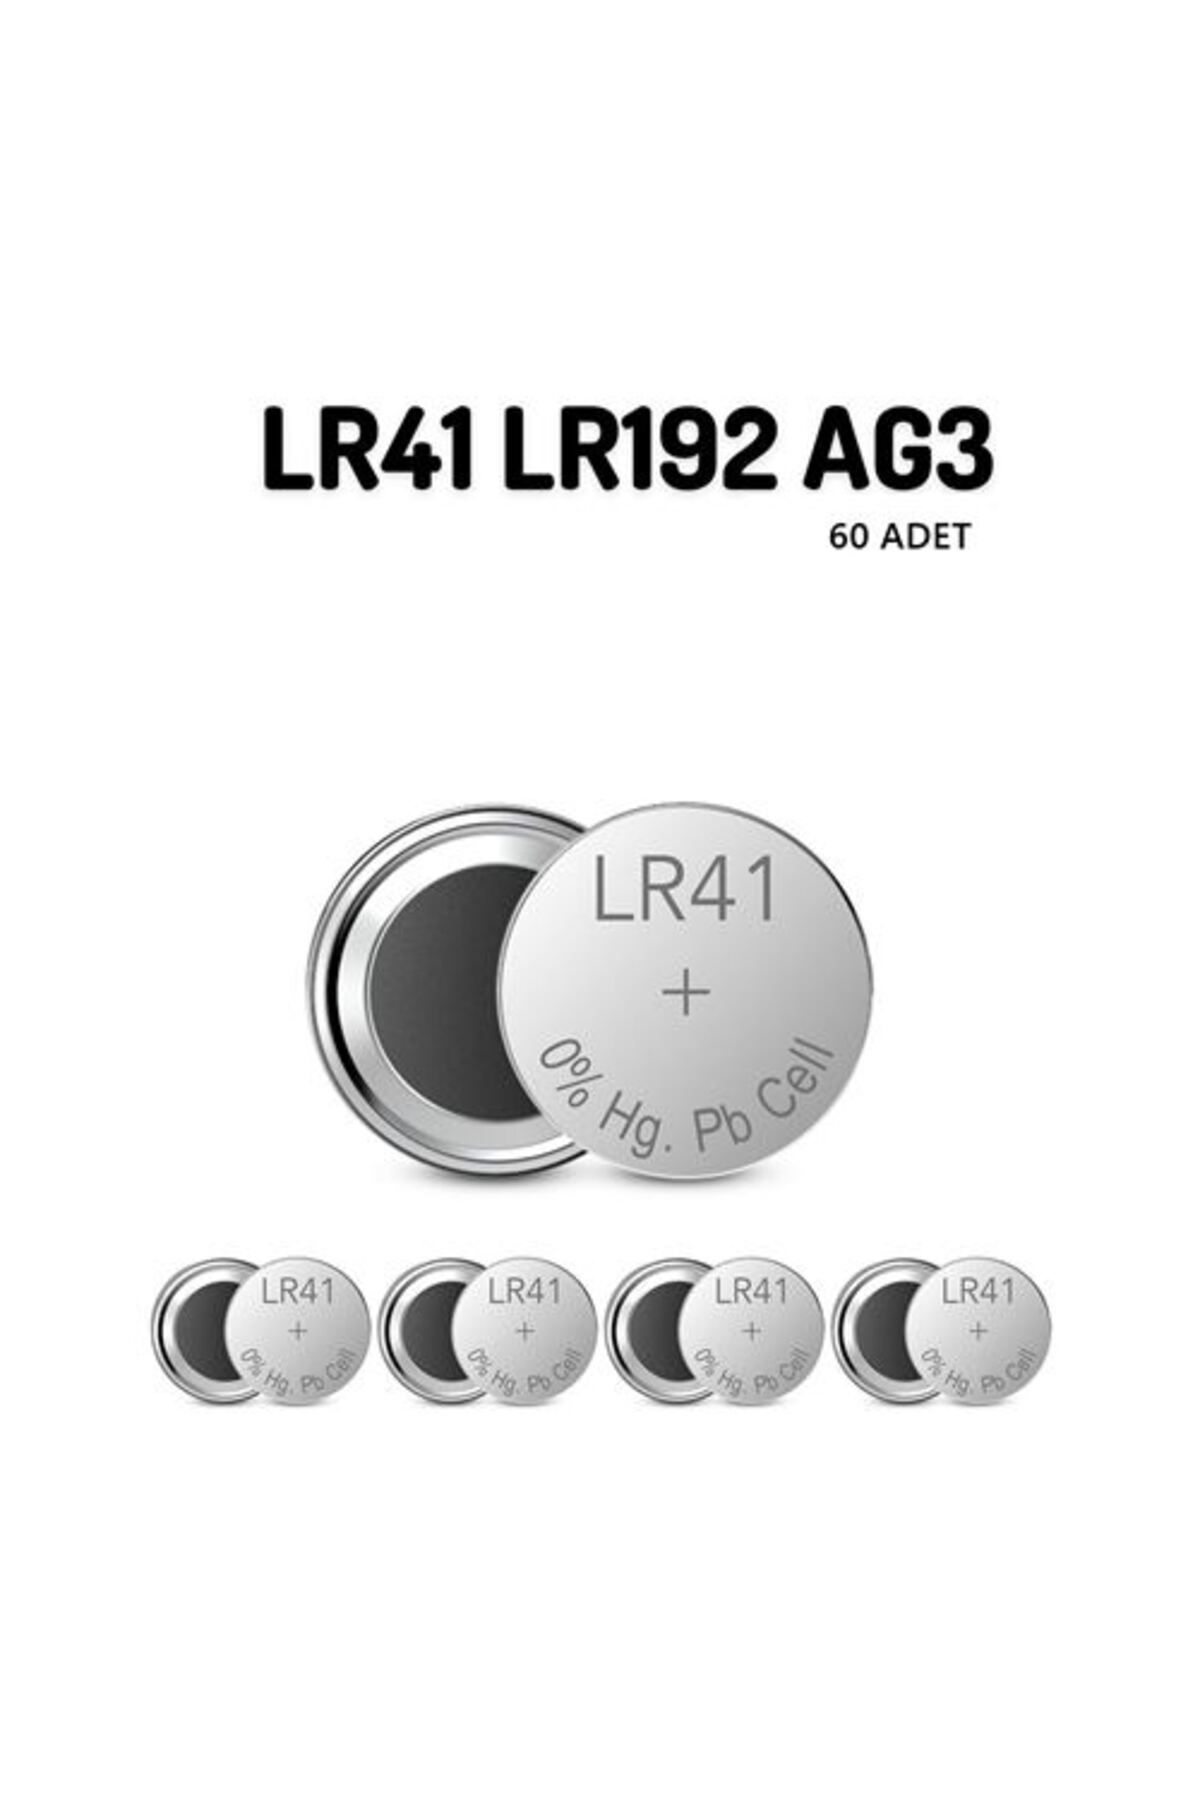 Transformacion 50+10 ADET LR41 LR192 AG3 1.55V Alkaline Pil 716932